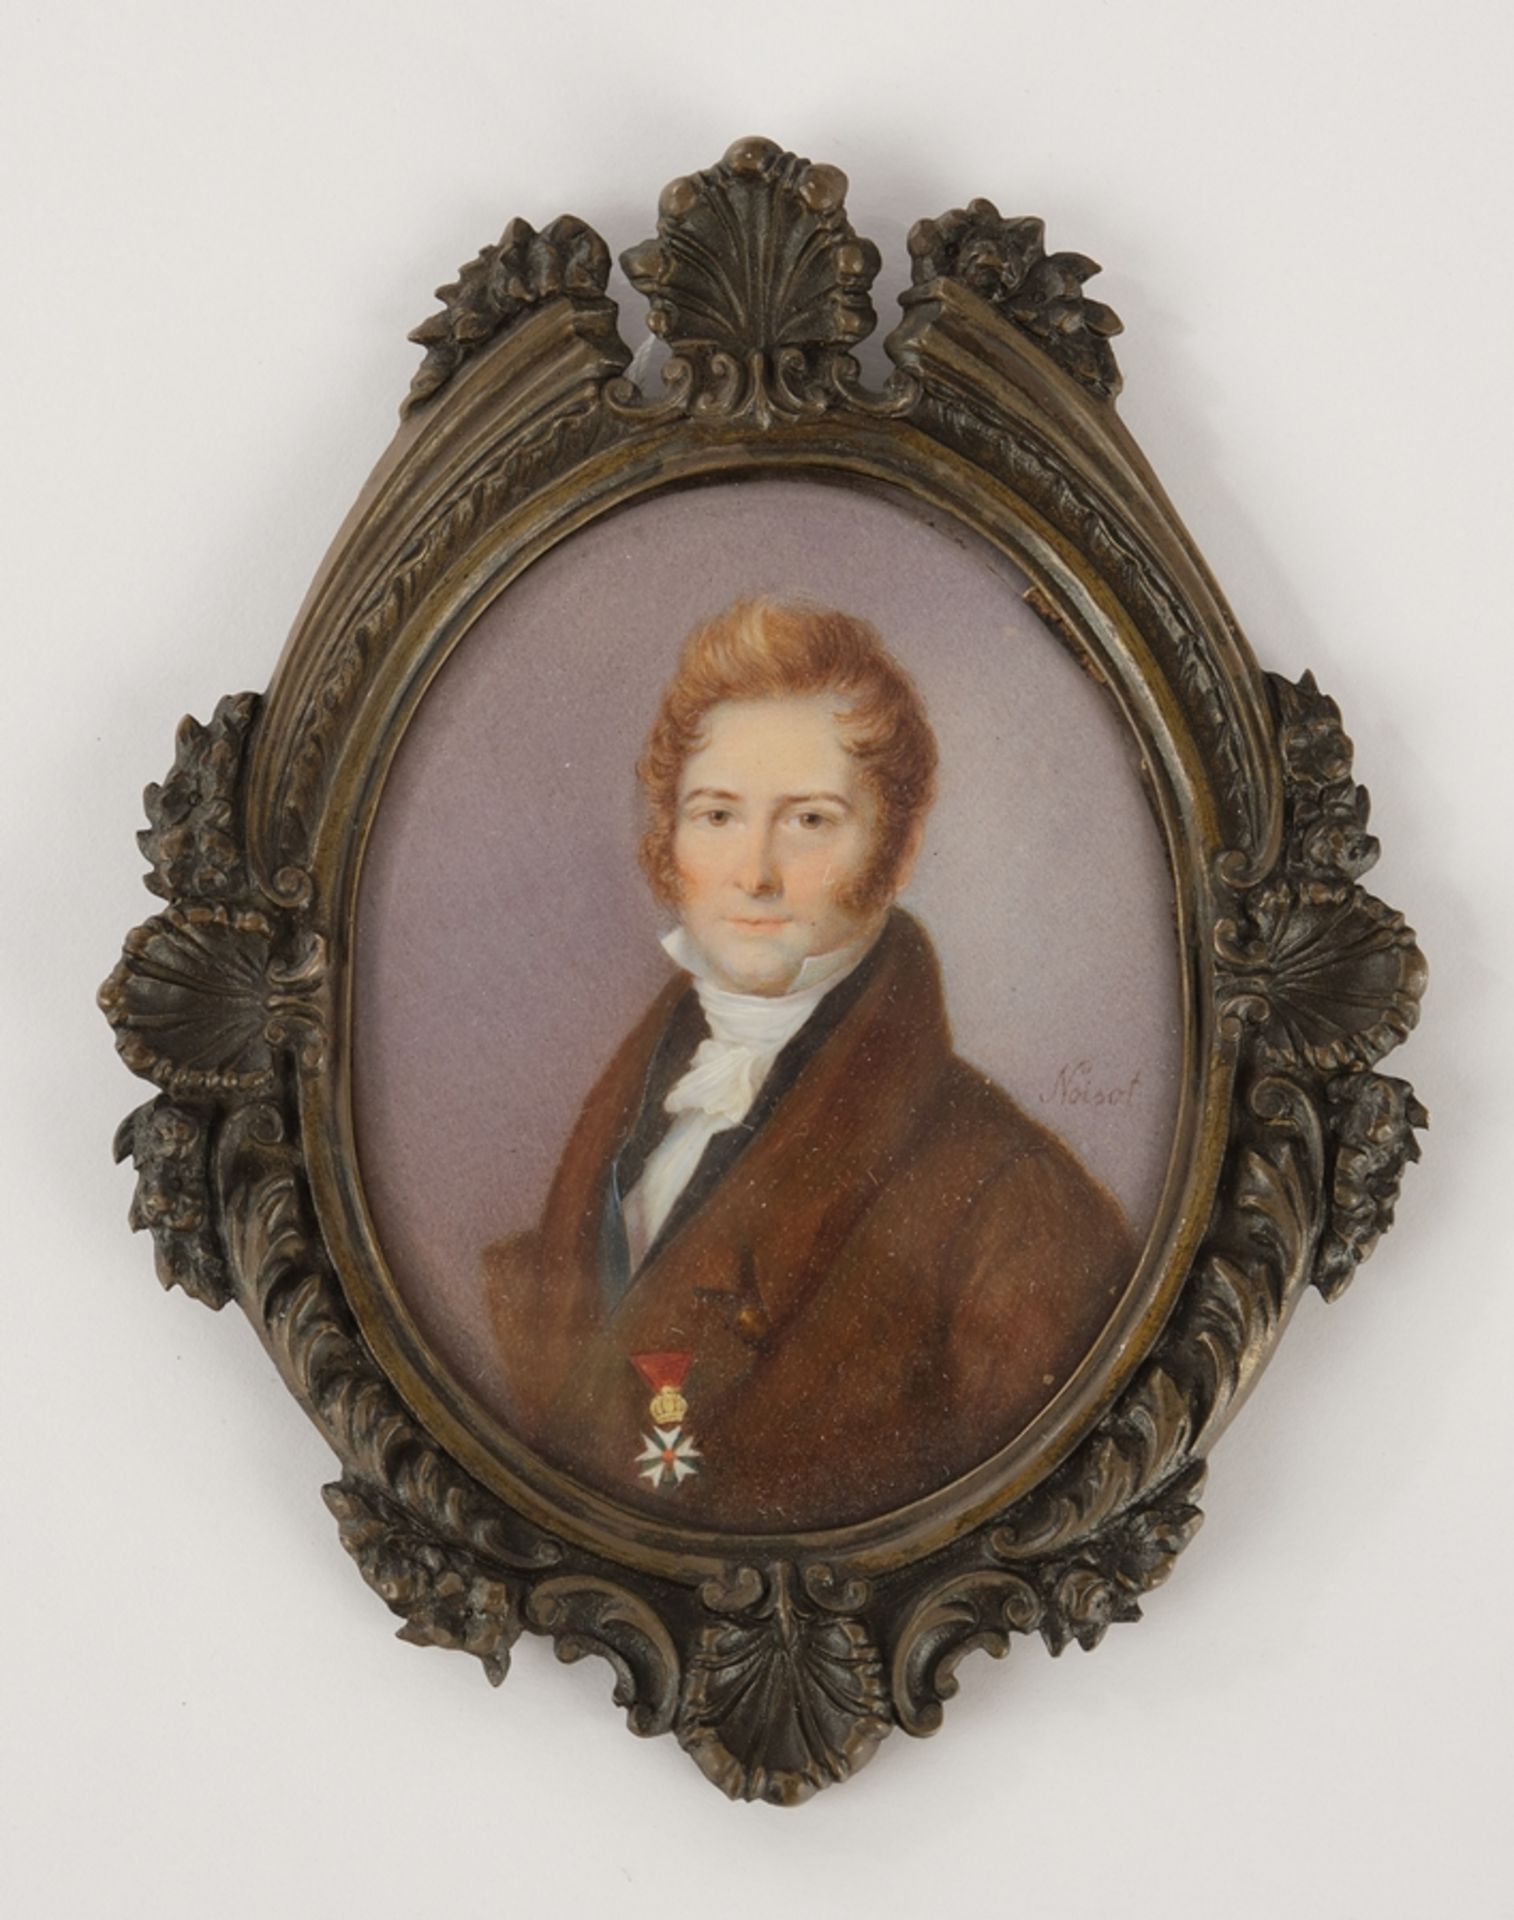 Miniatur, "Herrenporträt", Frankreich, um 1820-1830, Gouache auf Elfenbein, rechts bezeichnet Noiso